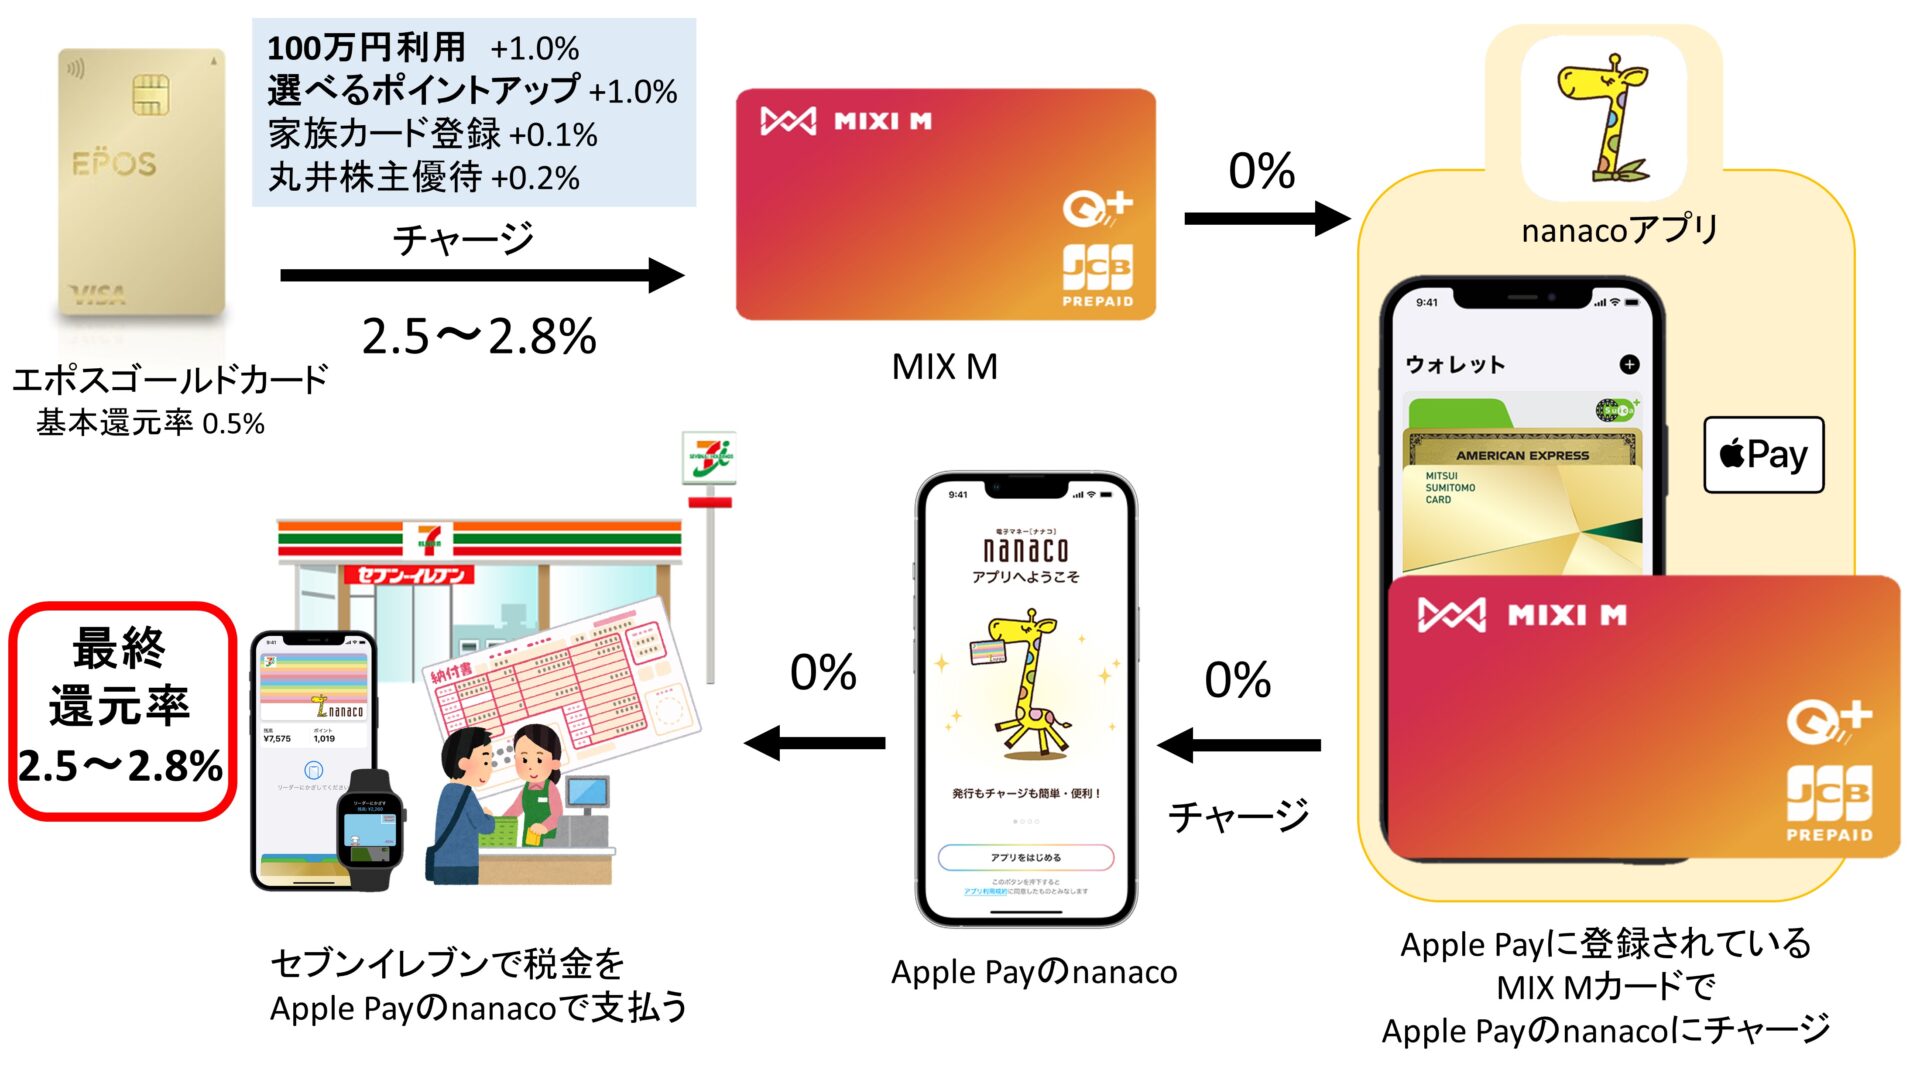 エポスゴールドカード→MIXI M→Apple Payのnanaco or waon